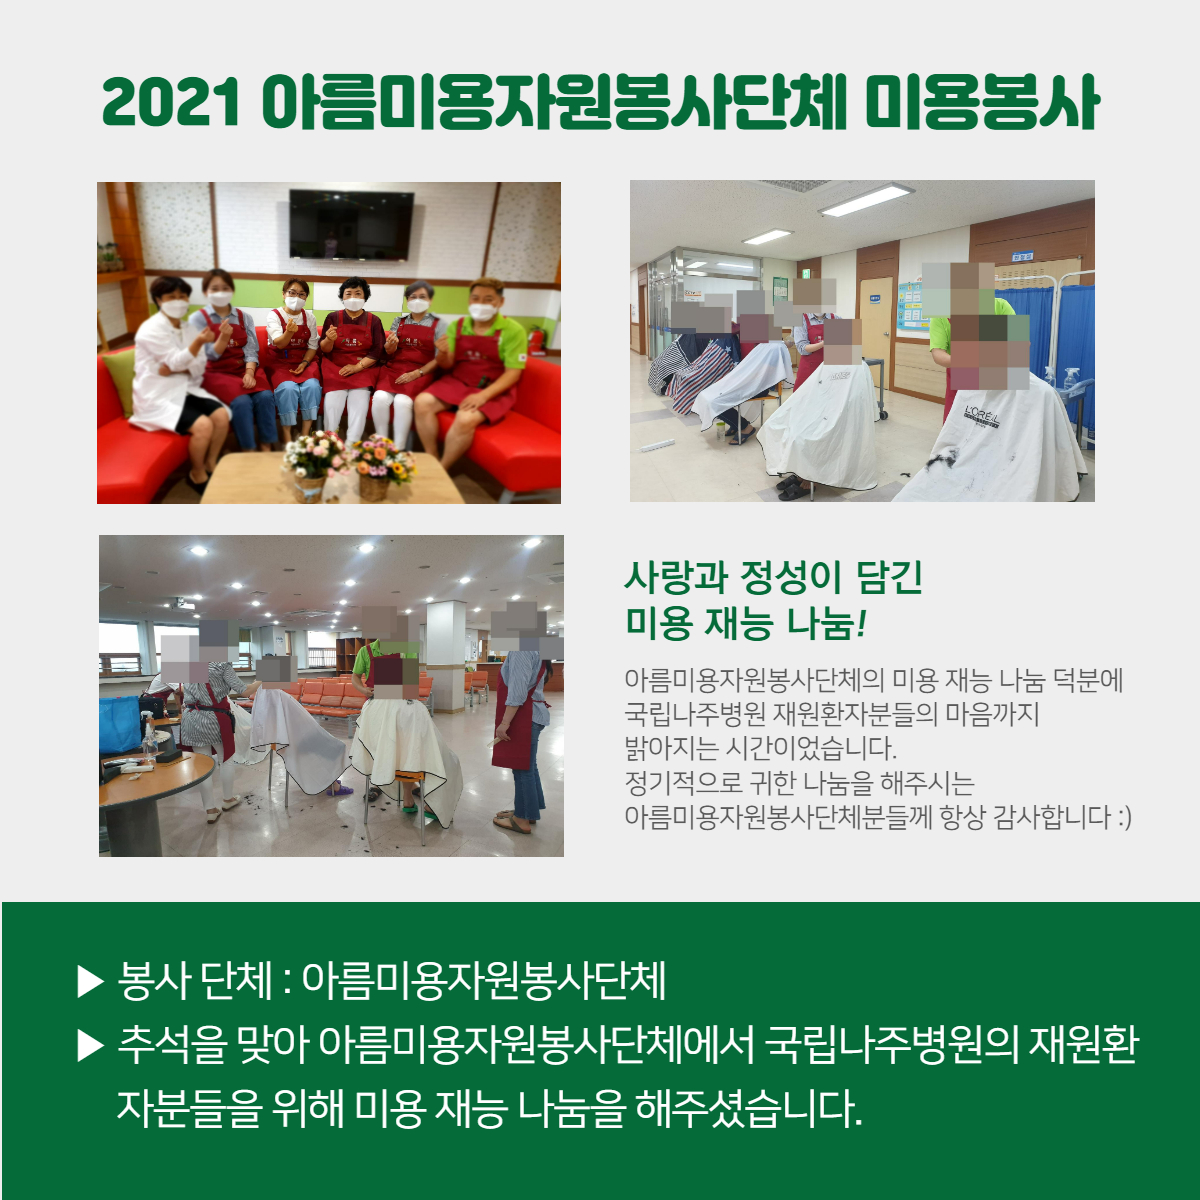 2021 아름미용자원봉사단체 미용봉사 하단참고